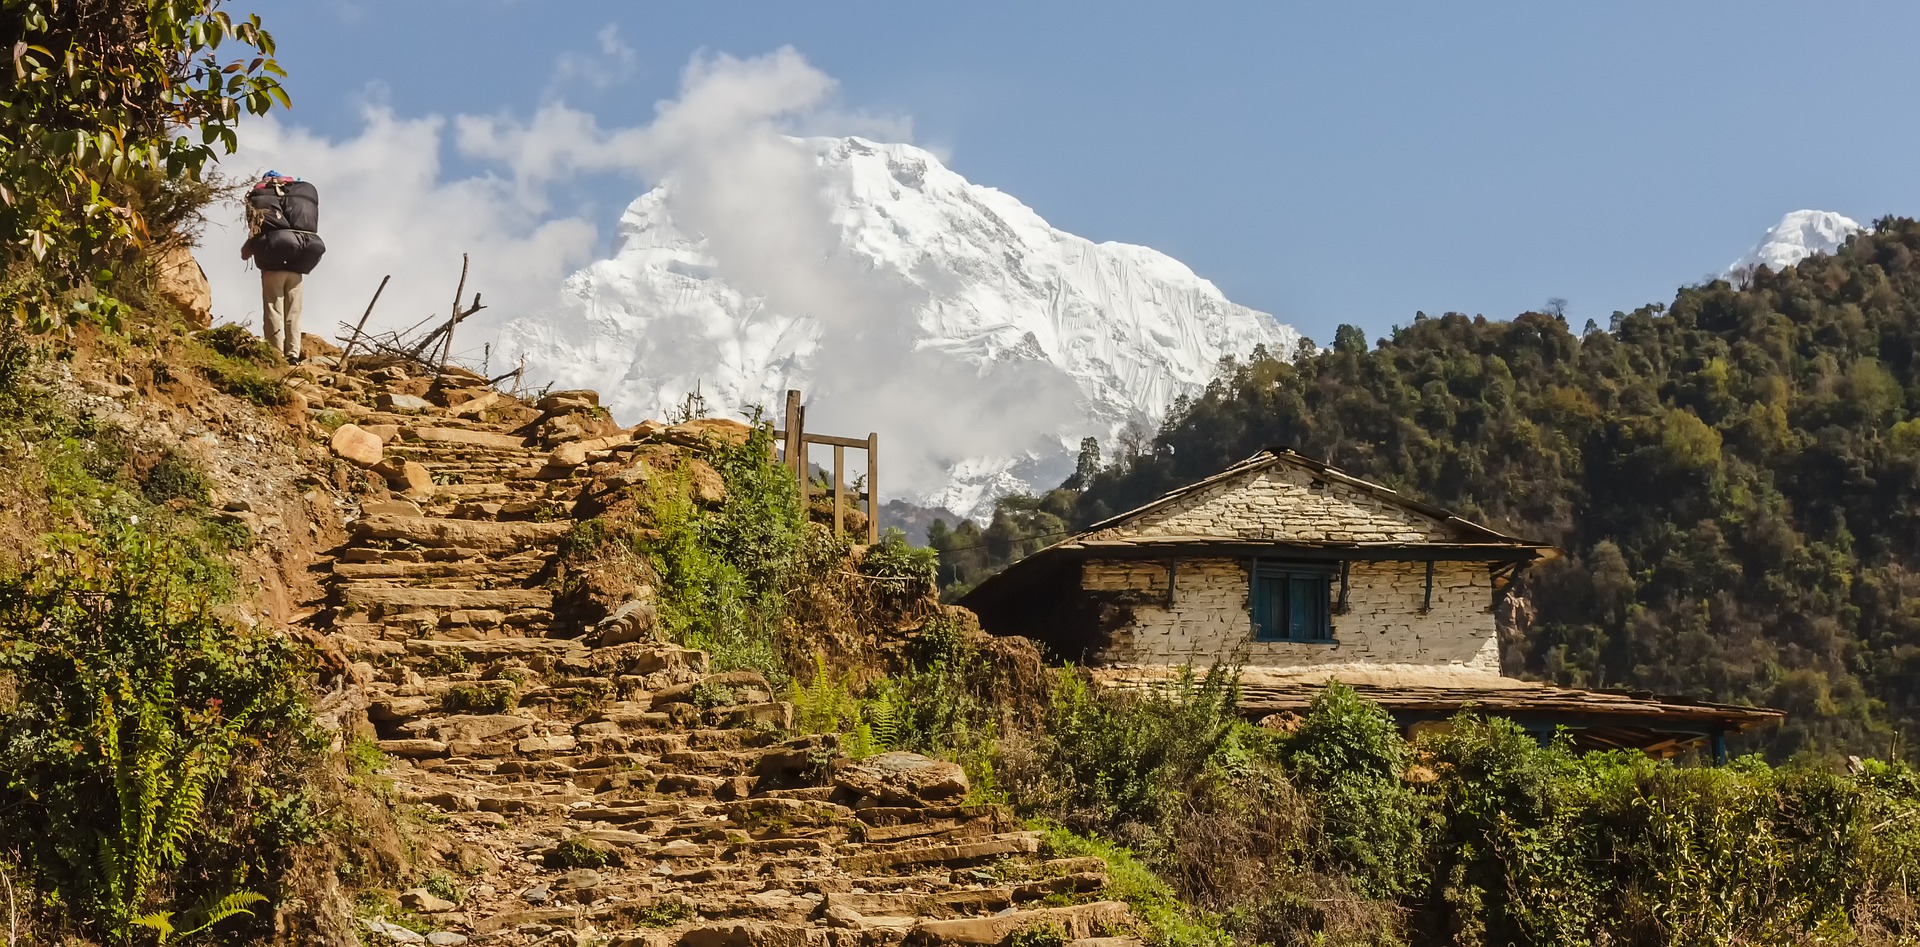 Adventure Activities to do in Nepal